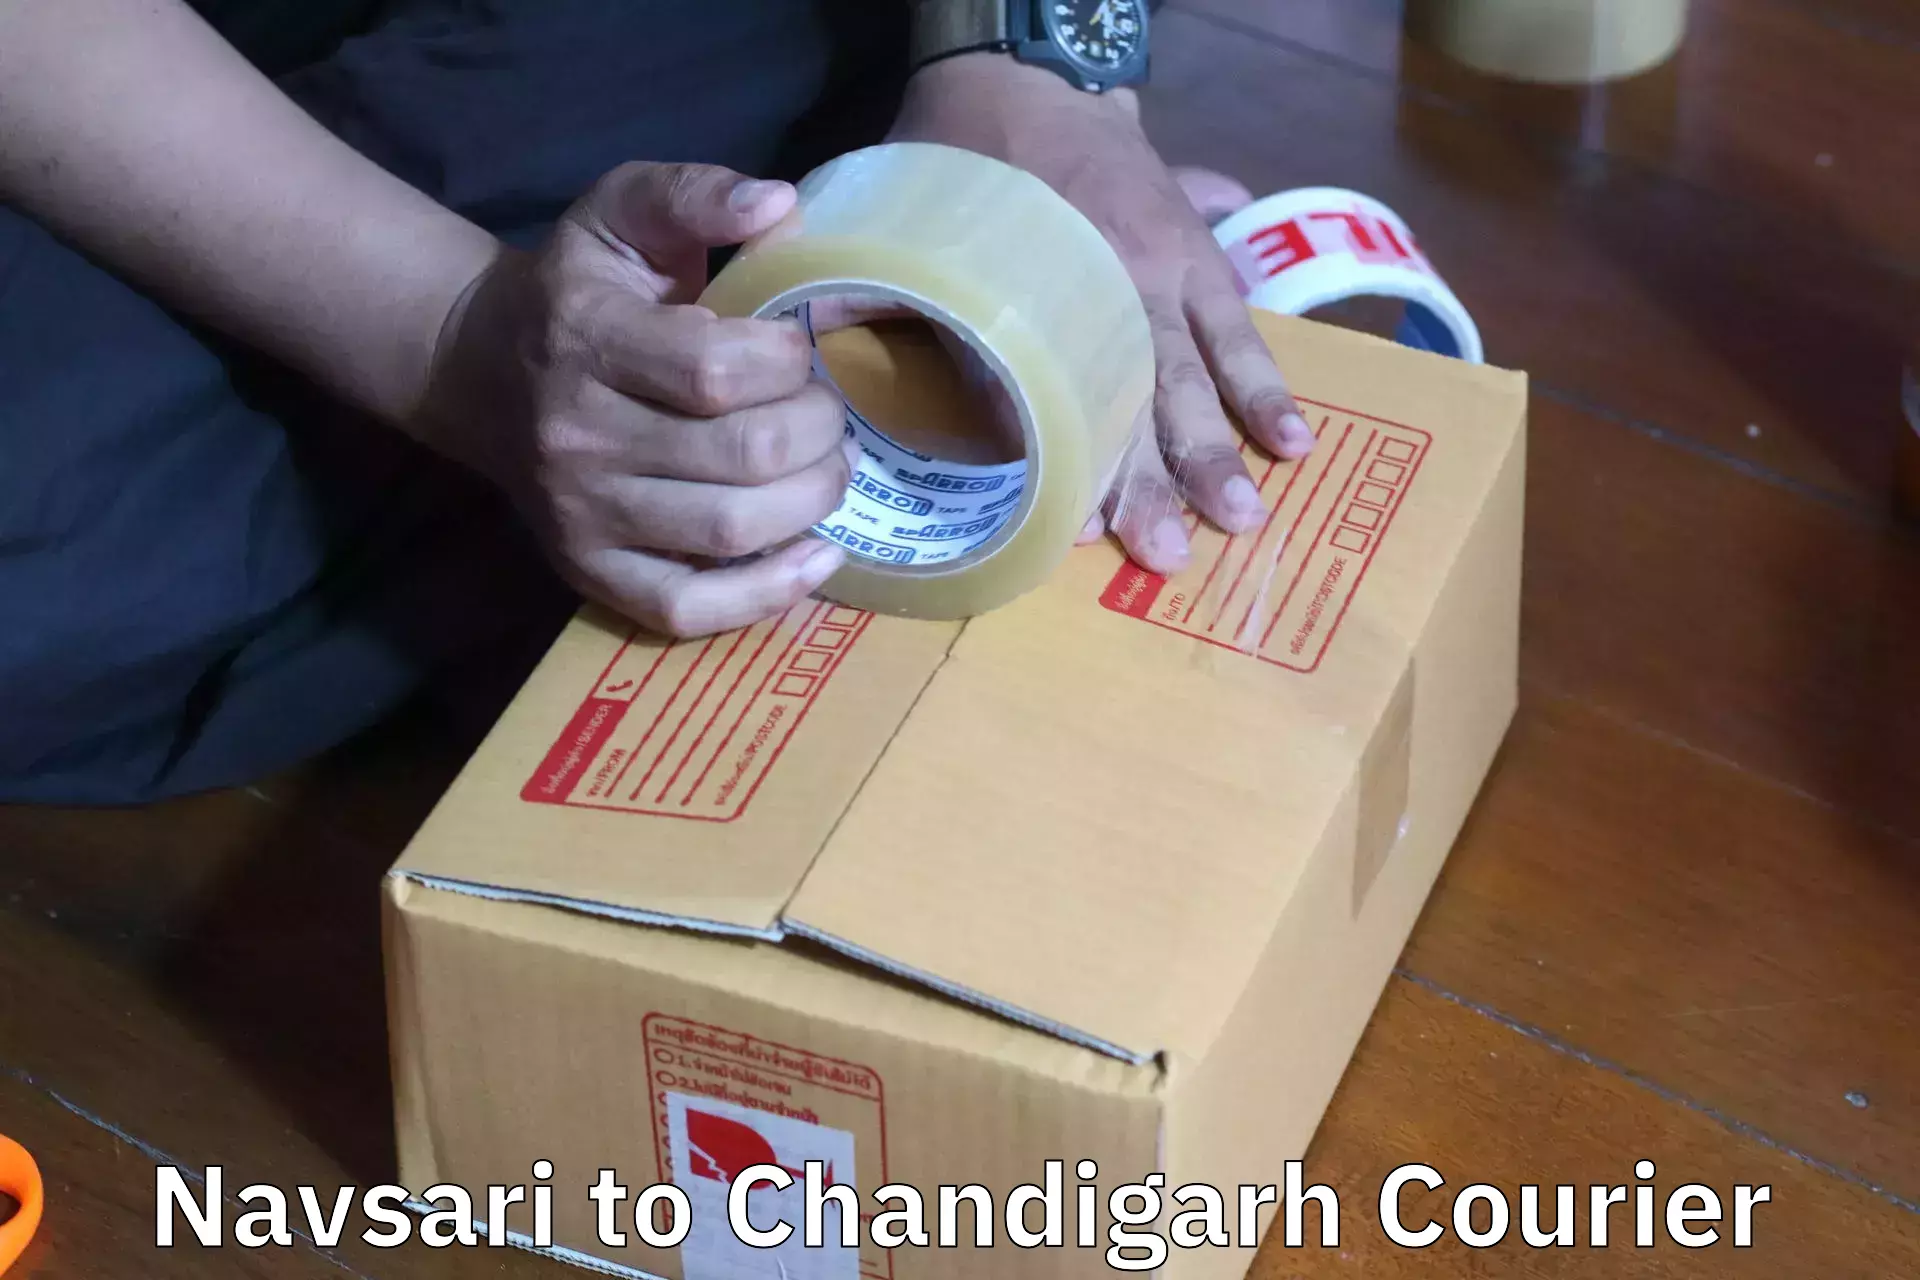 Home moving experts Navsari to Chandigarh